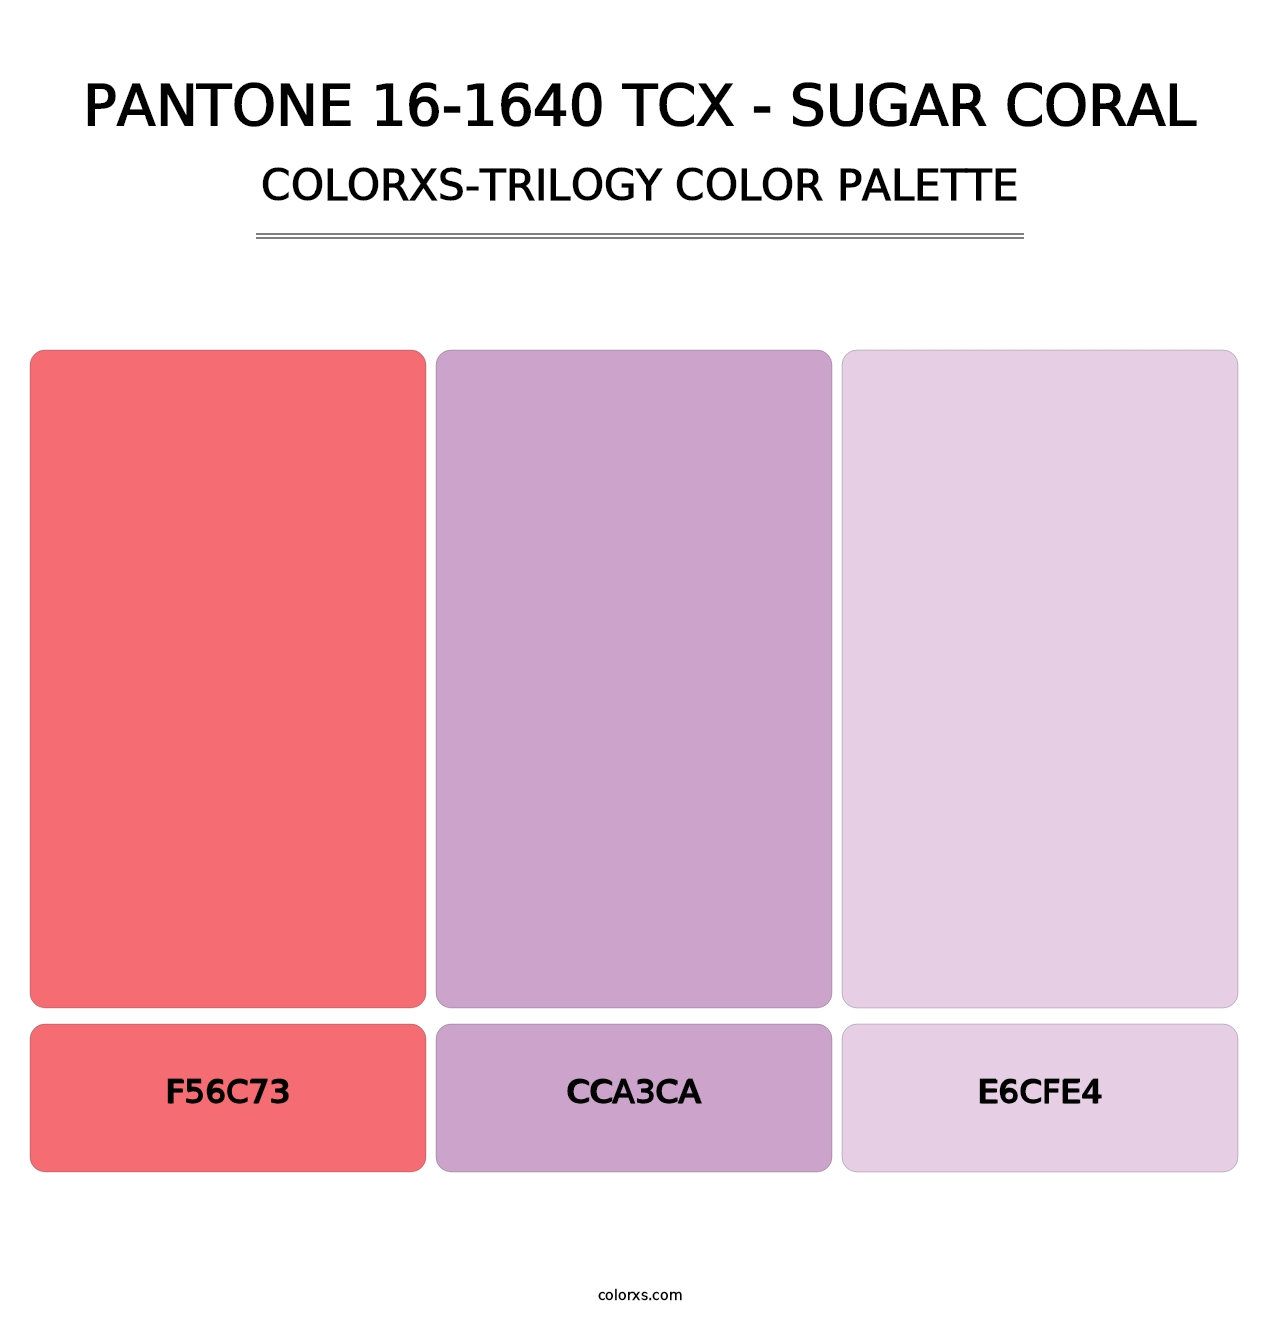 PANTONE 16-1640 TCX - Sugar Coral - Colorxs Trilogy Palette